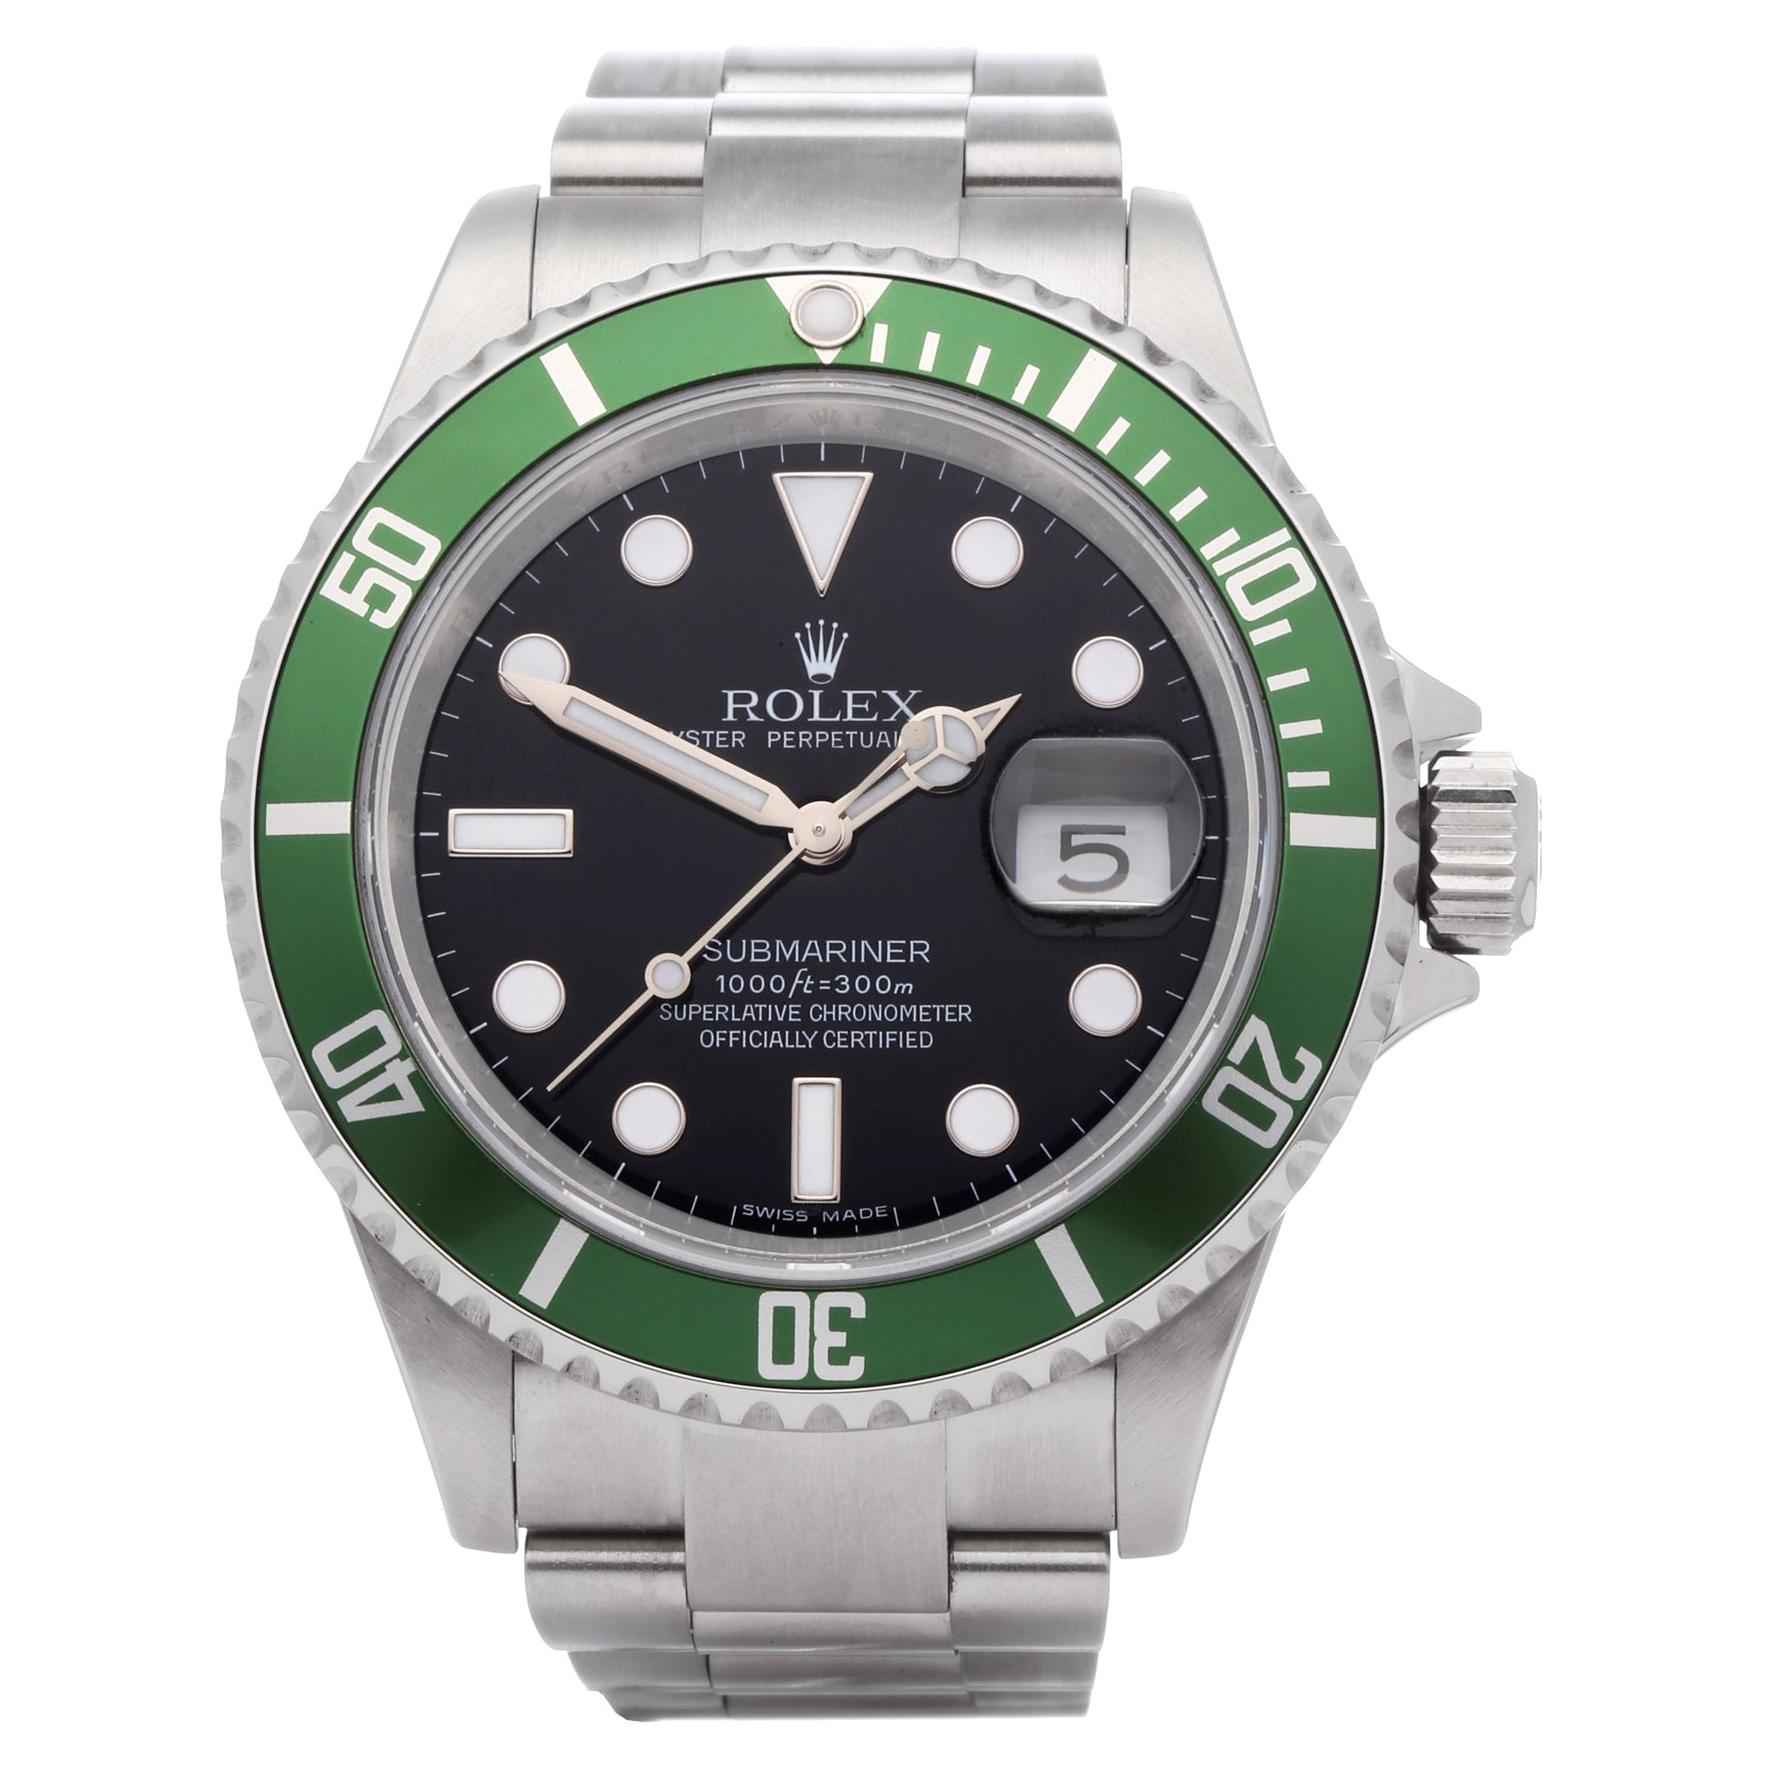 Rolex Submariner Date 16610LV Men's Stainless Steel Kermit' Watch